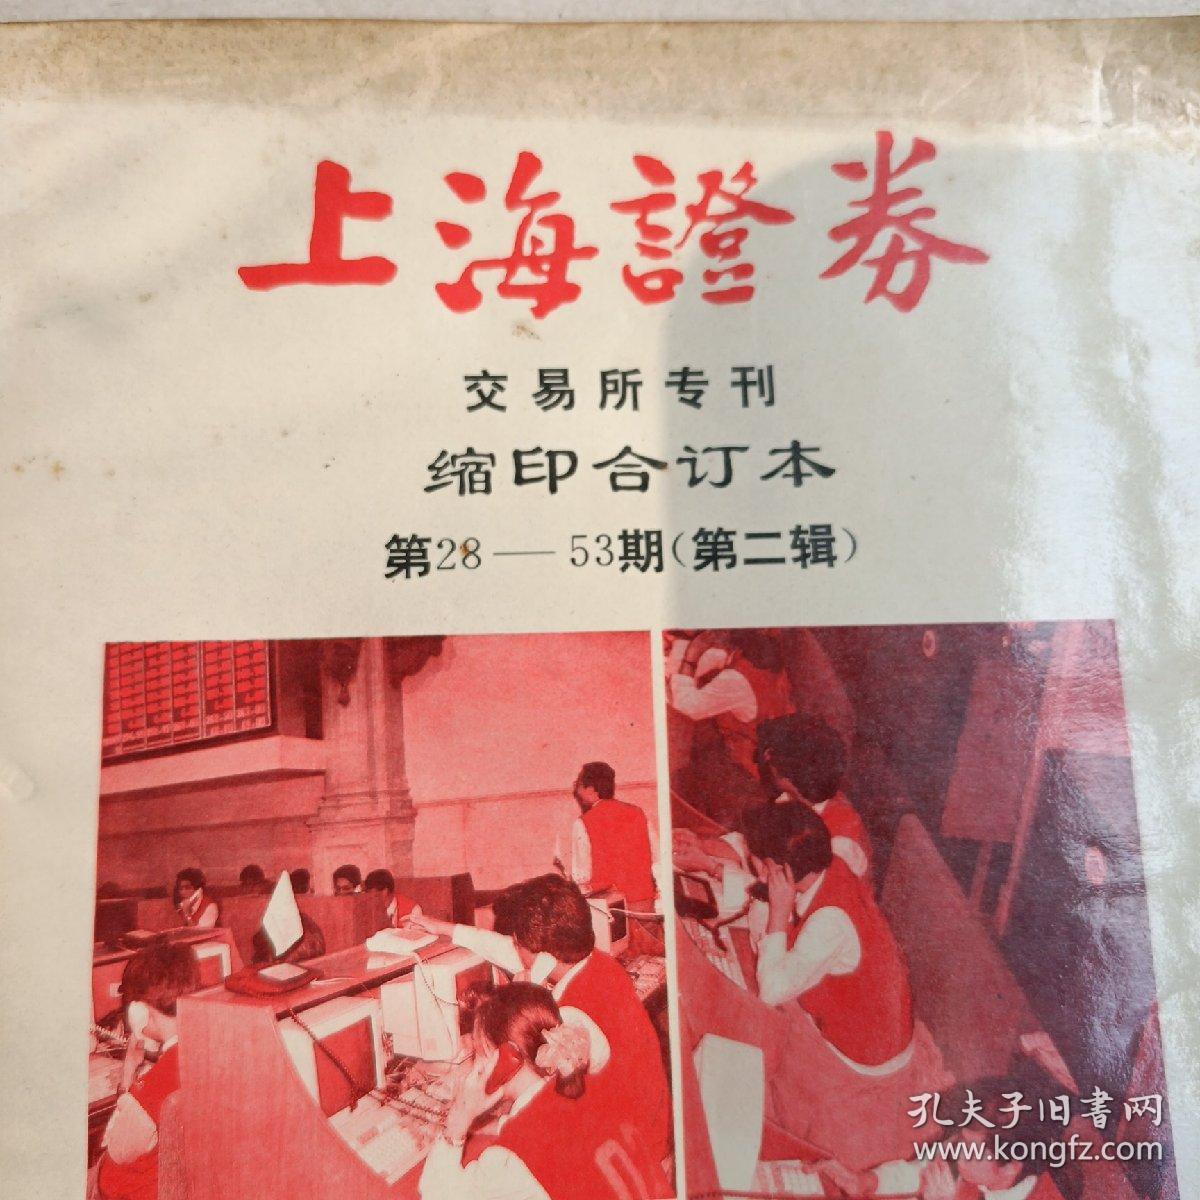 上海证券交易所专刊缩印合订本（第一、二辑）（2本合售）